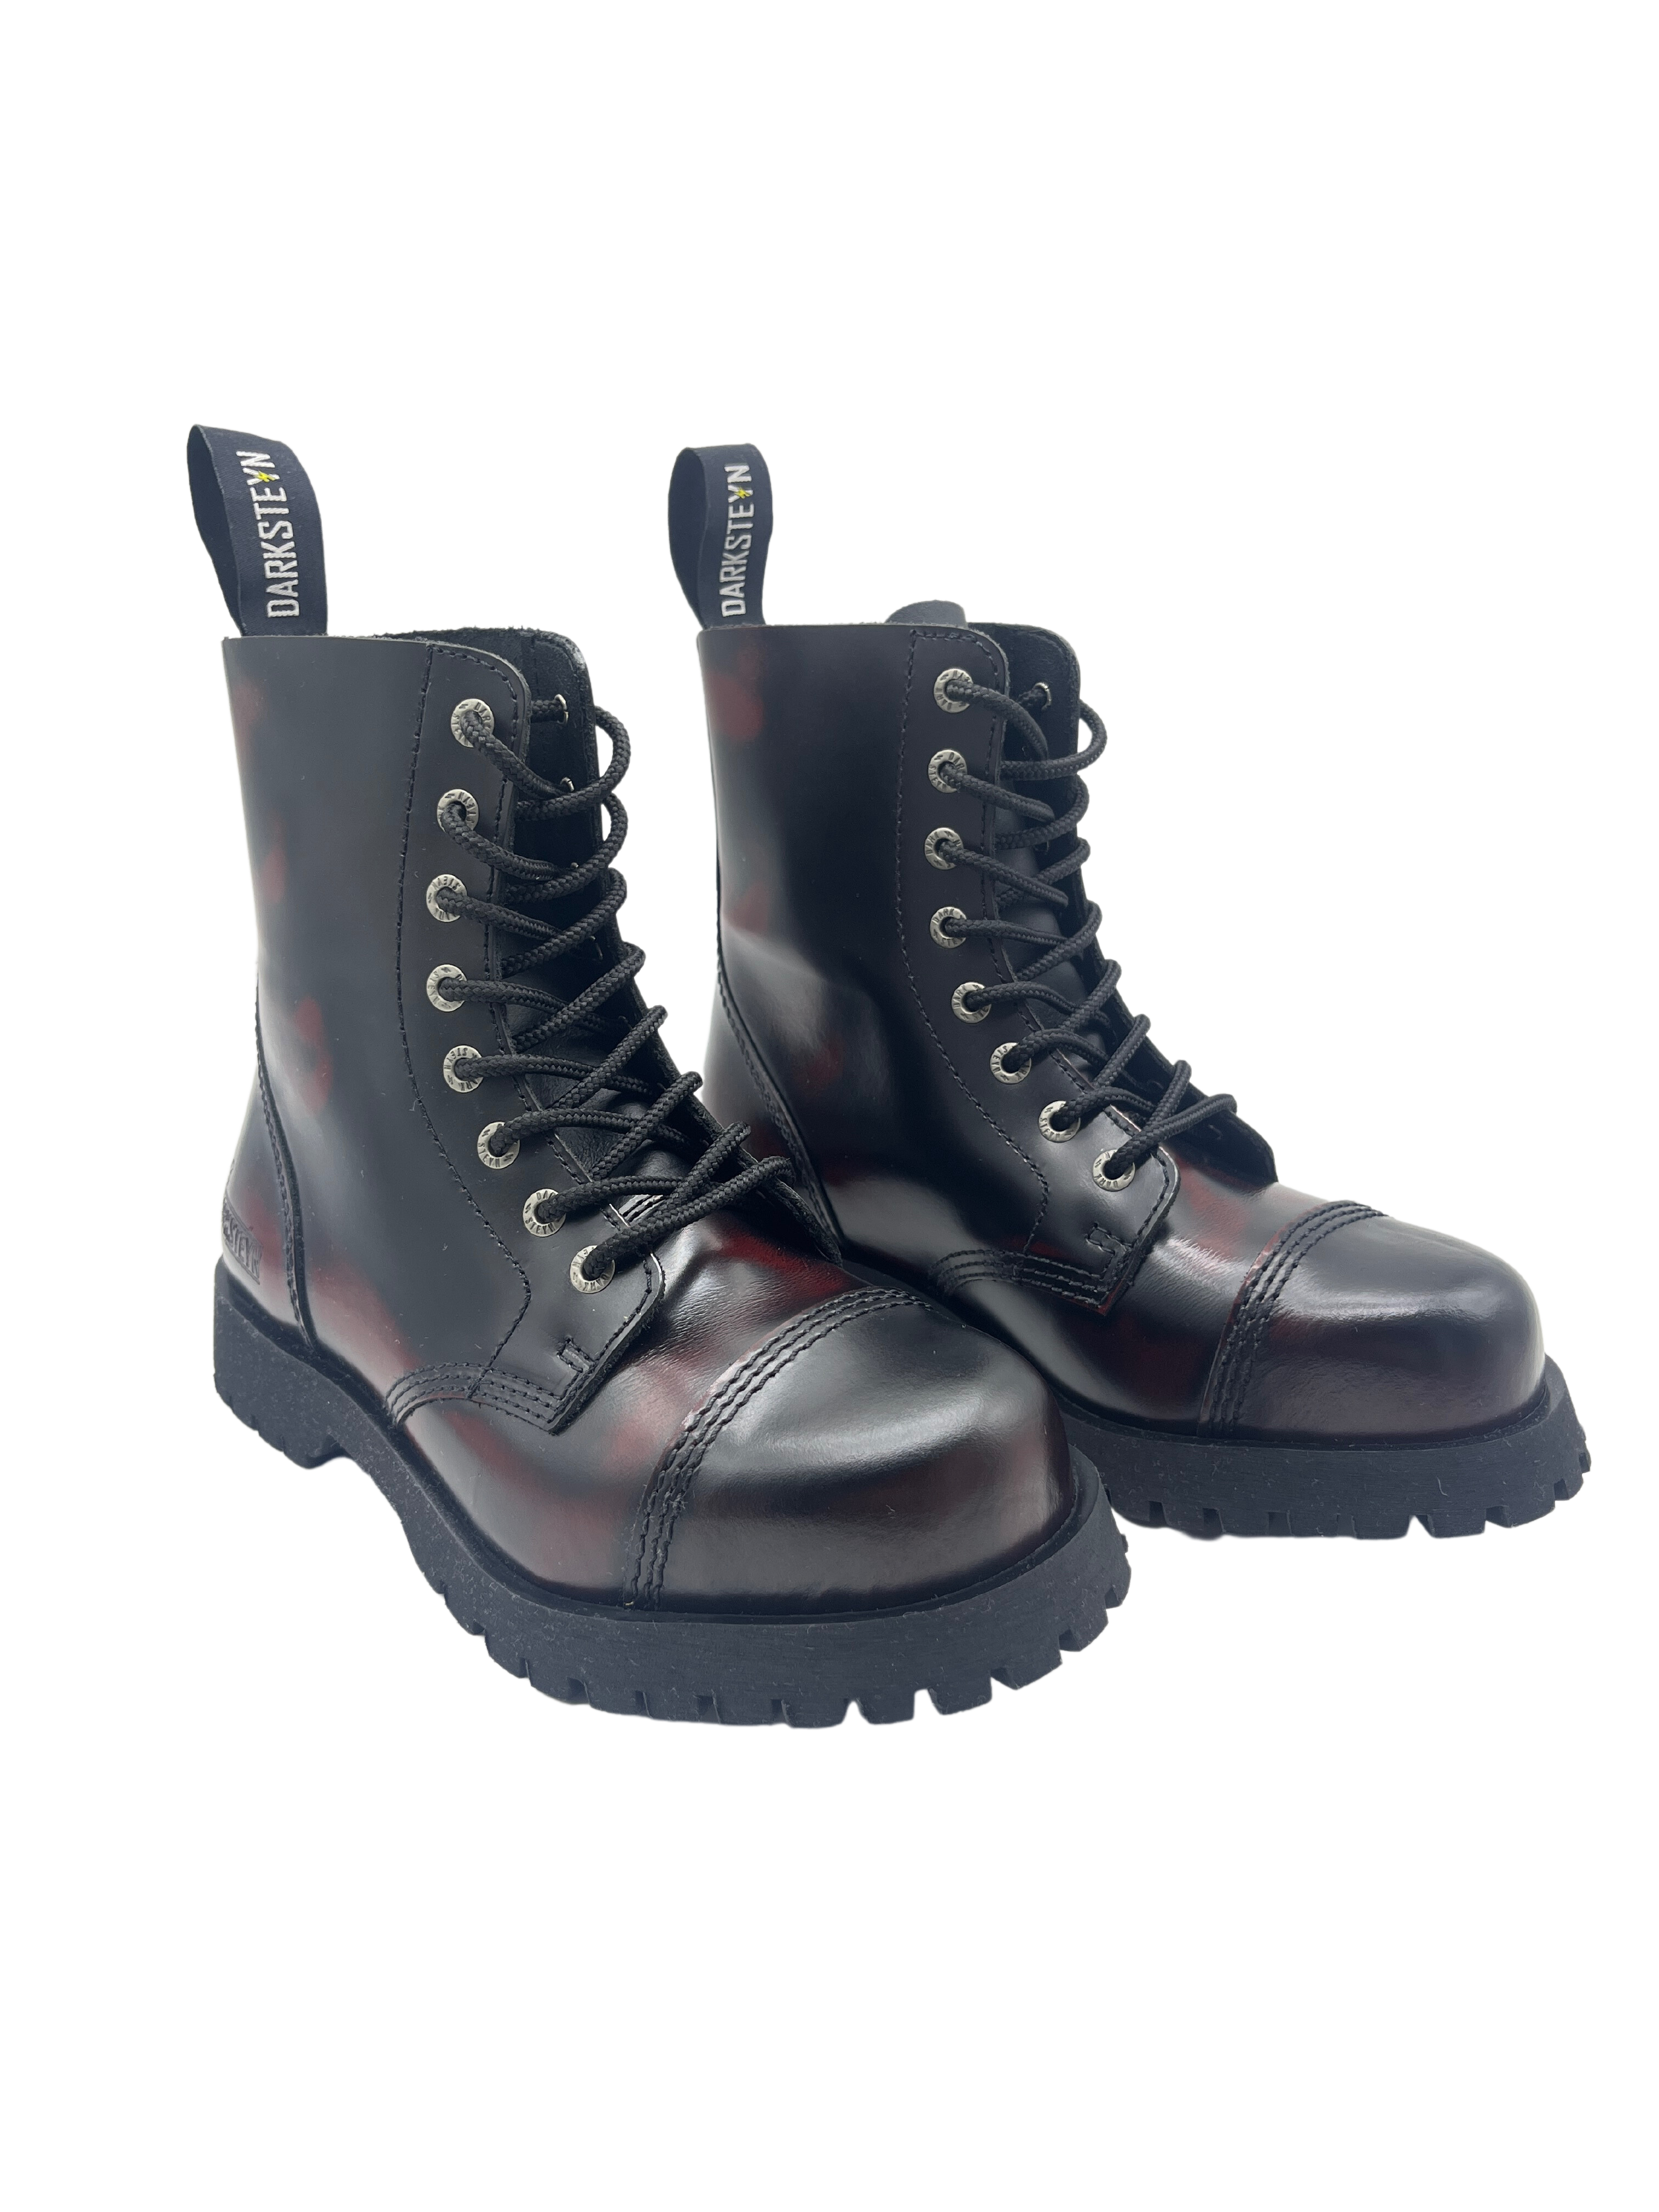 Darksteyn Stiefel Schuhe 8 Eye Ranger Premium Boots Red Rot Burgundy Springerstiefel